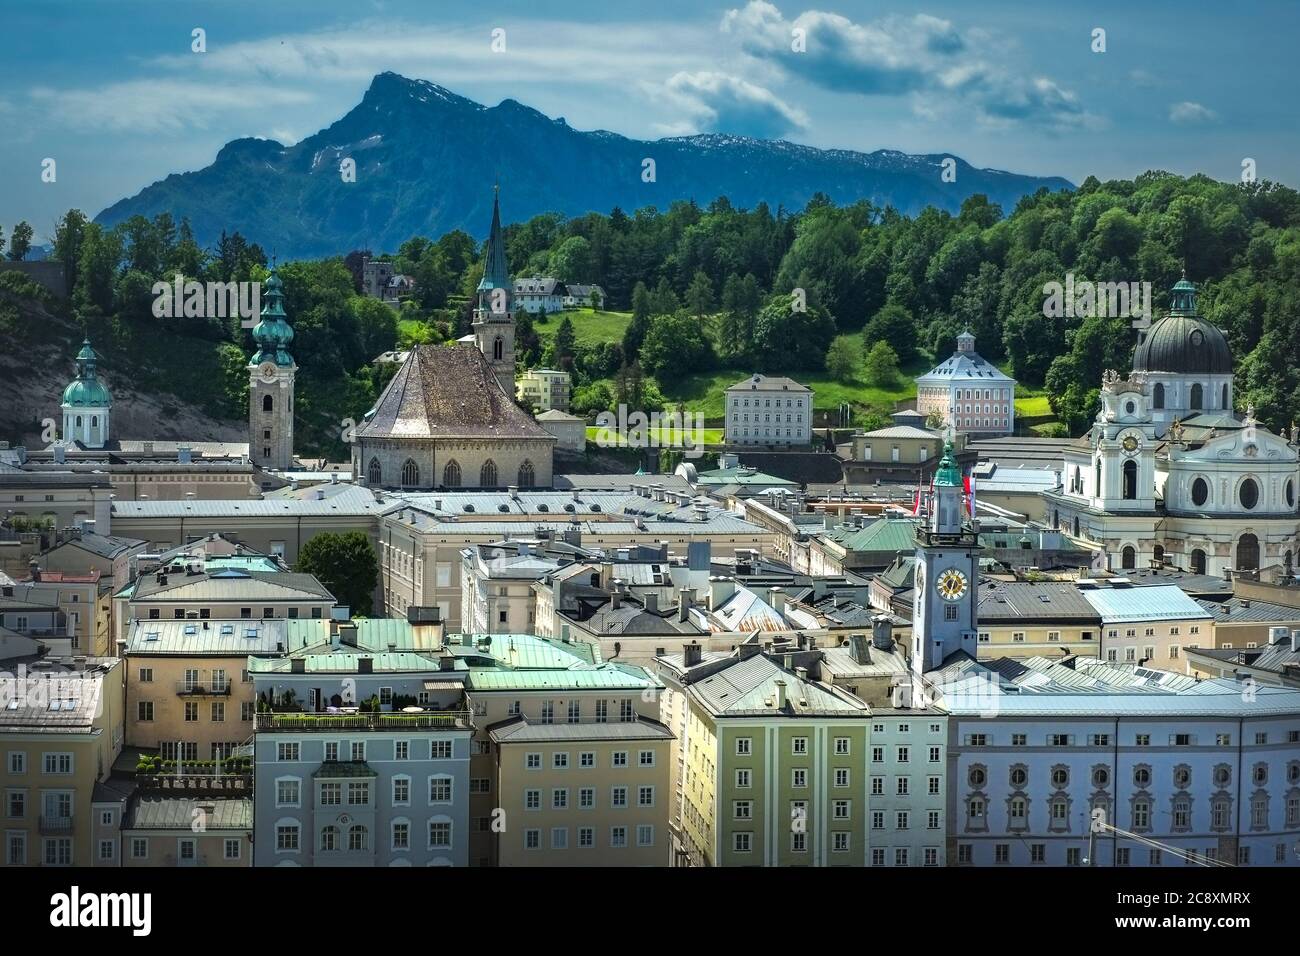 Luftbild zur historischen Stadt Salzburg in Österreich Stockfoto